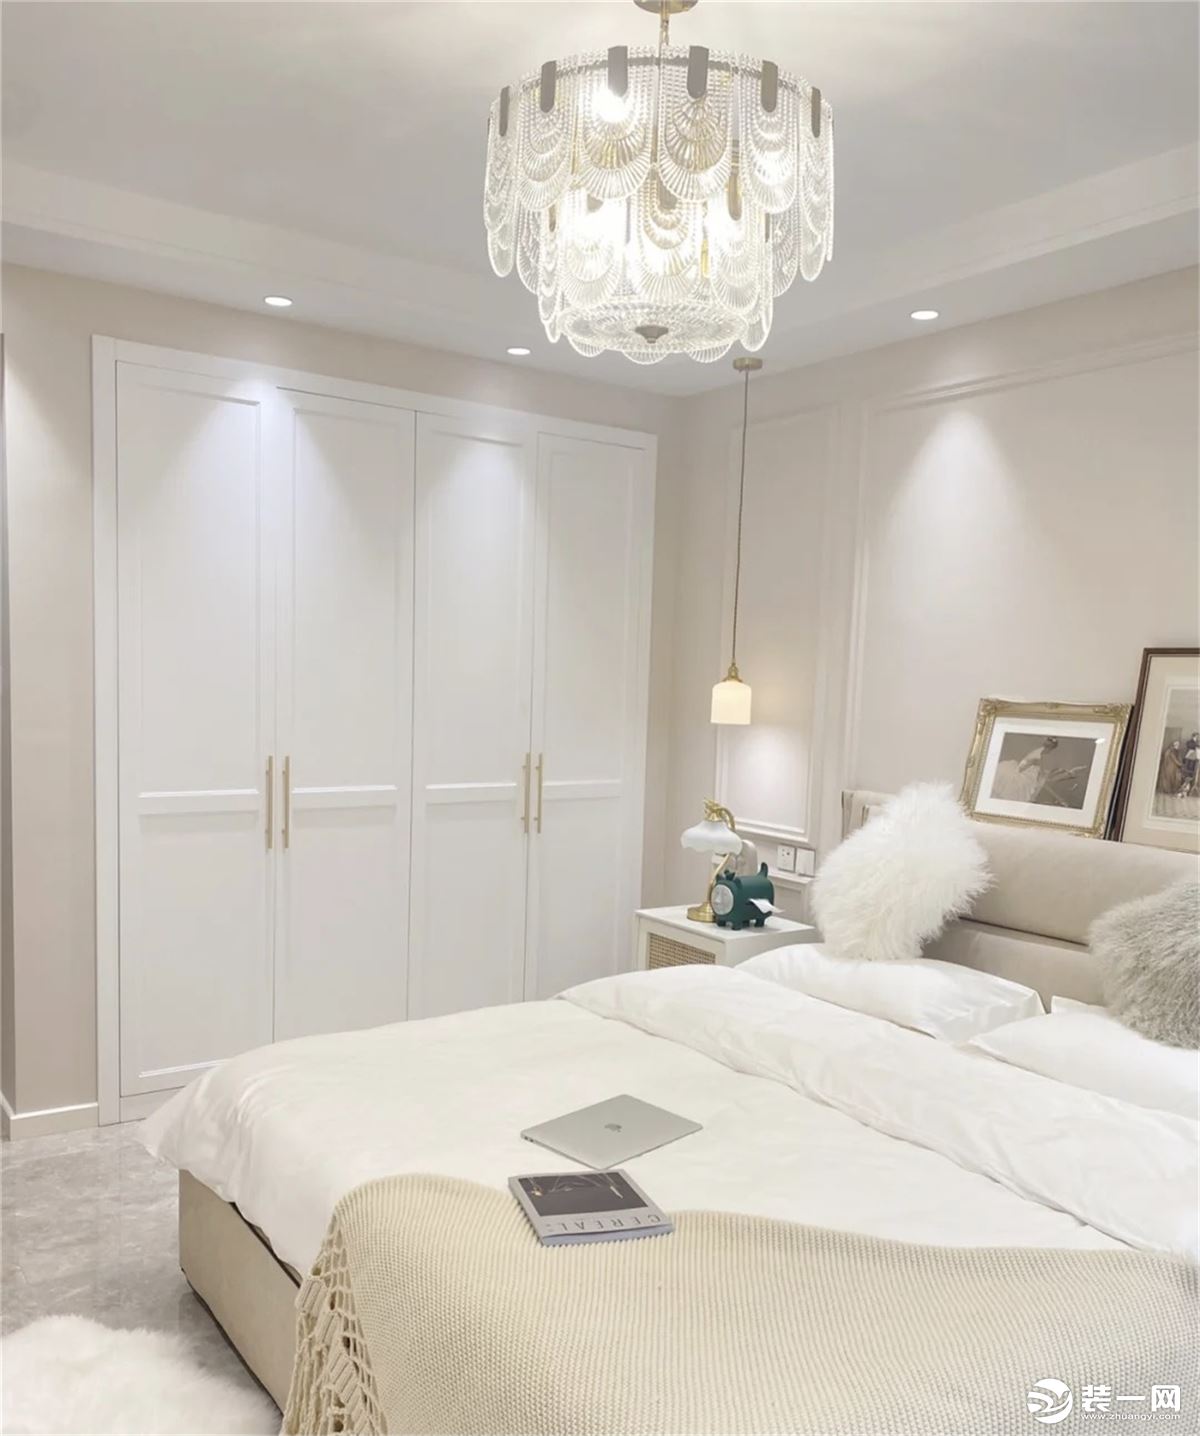 卧室;就更加显得安静舒适，自然的木质搭配浅色平衡美感。